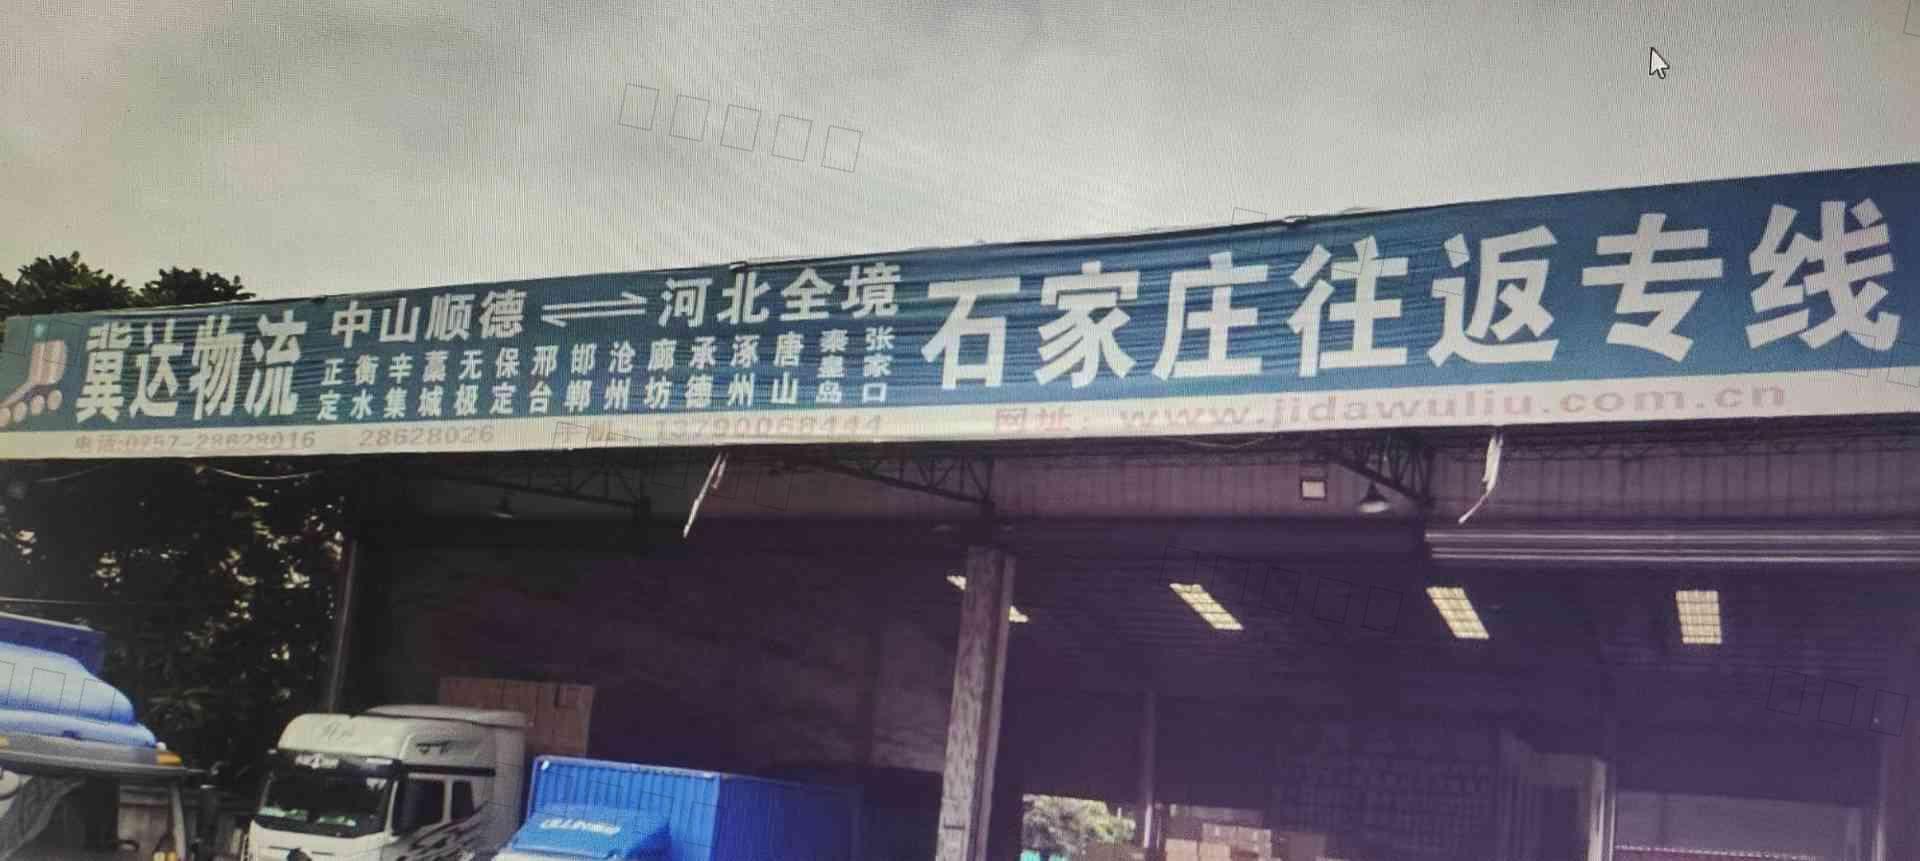 佛山市顺德区容桂冀达货运代理服务部